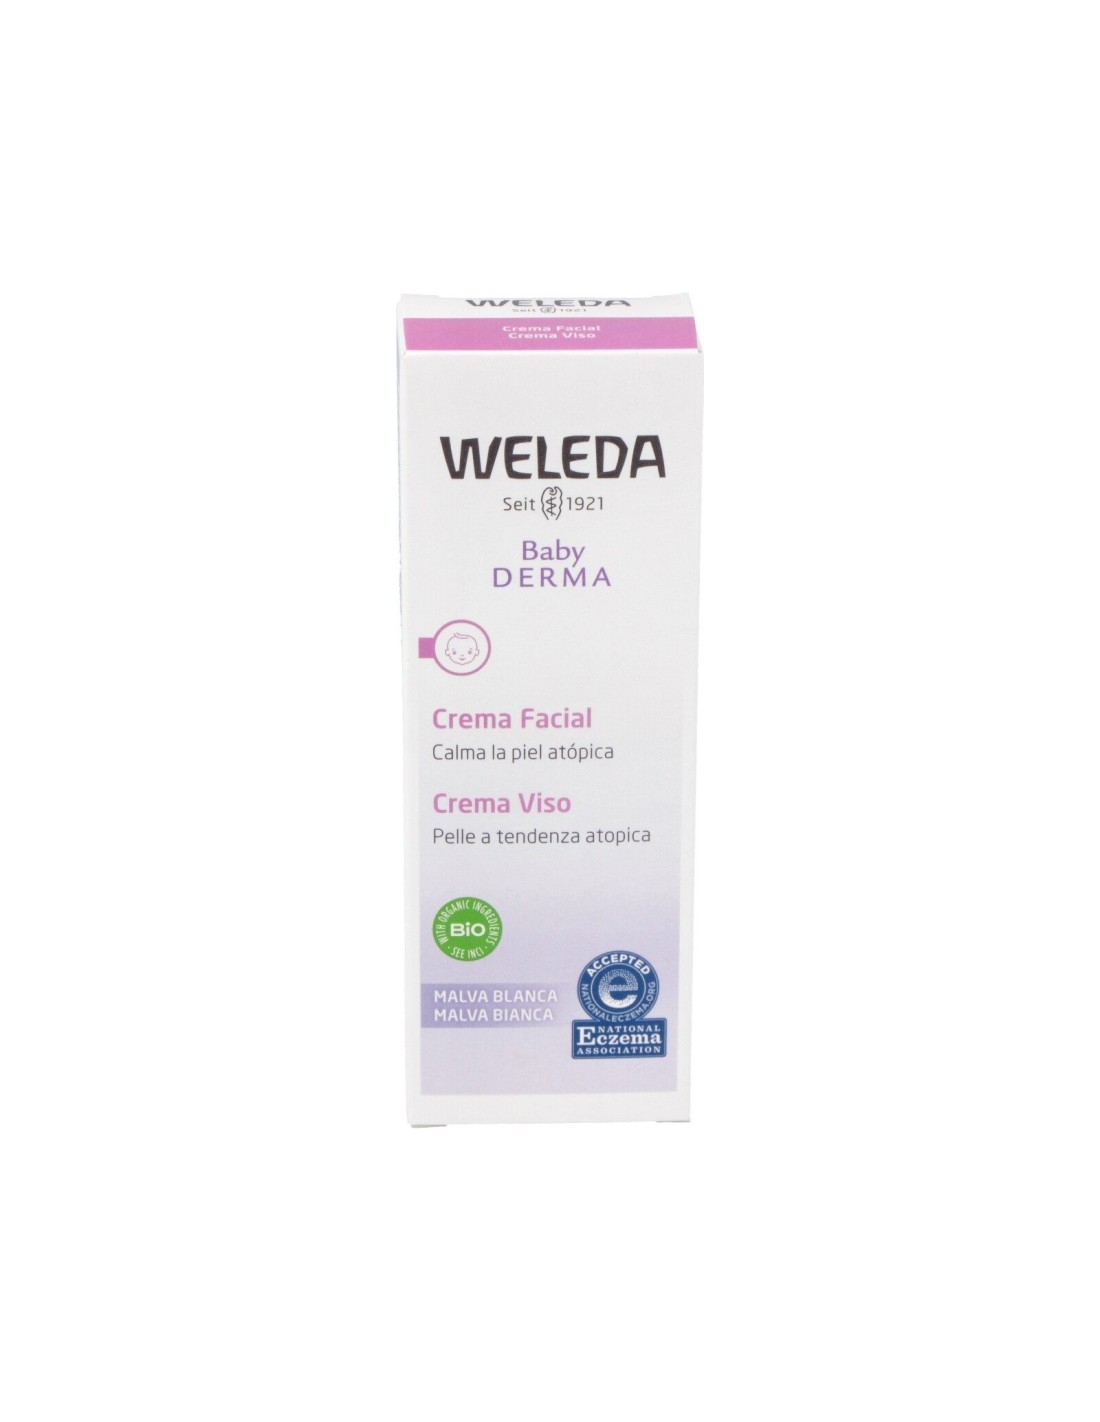 Crema Facial Malva Blanca Bebe-Derma 50Ml. de Weleda